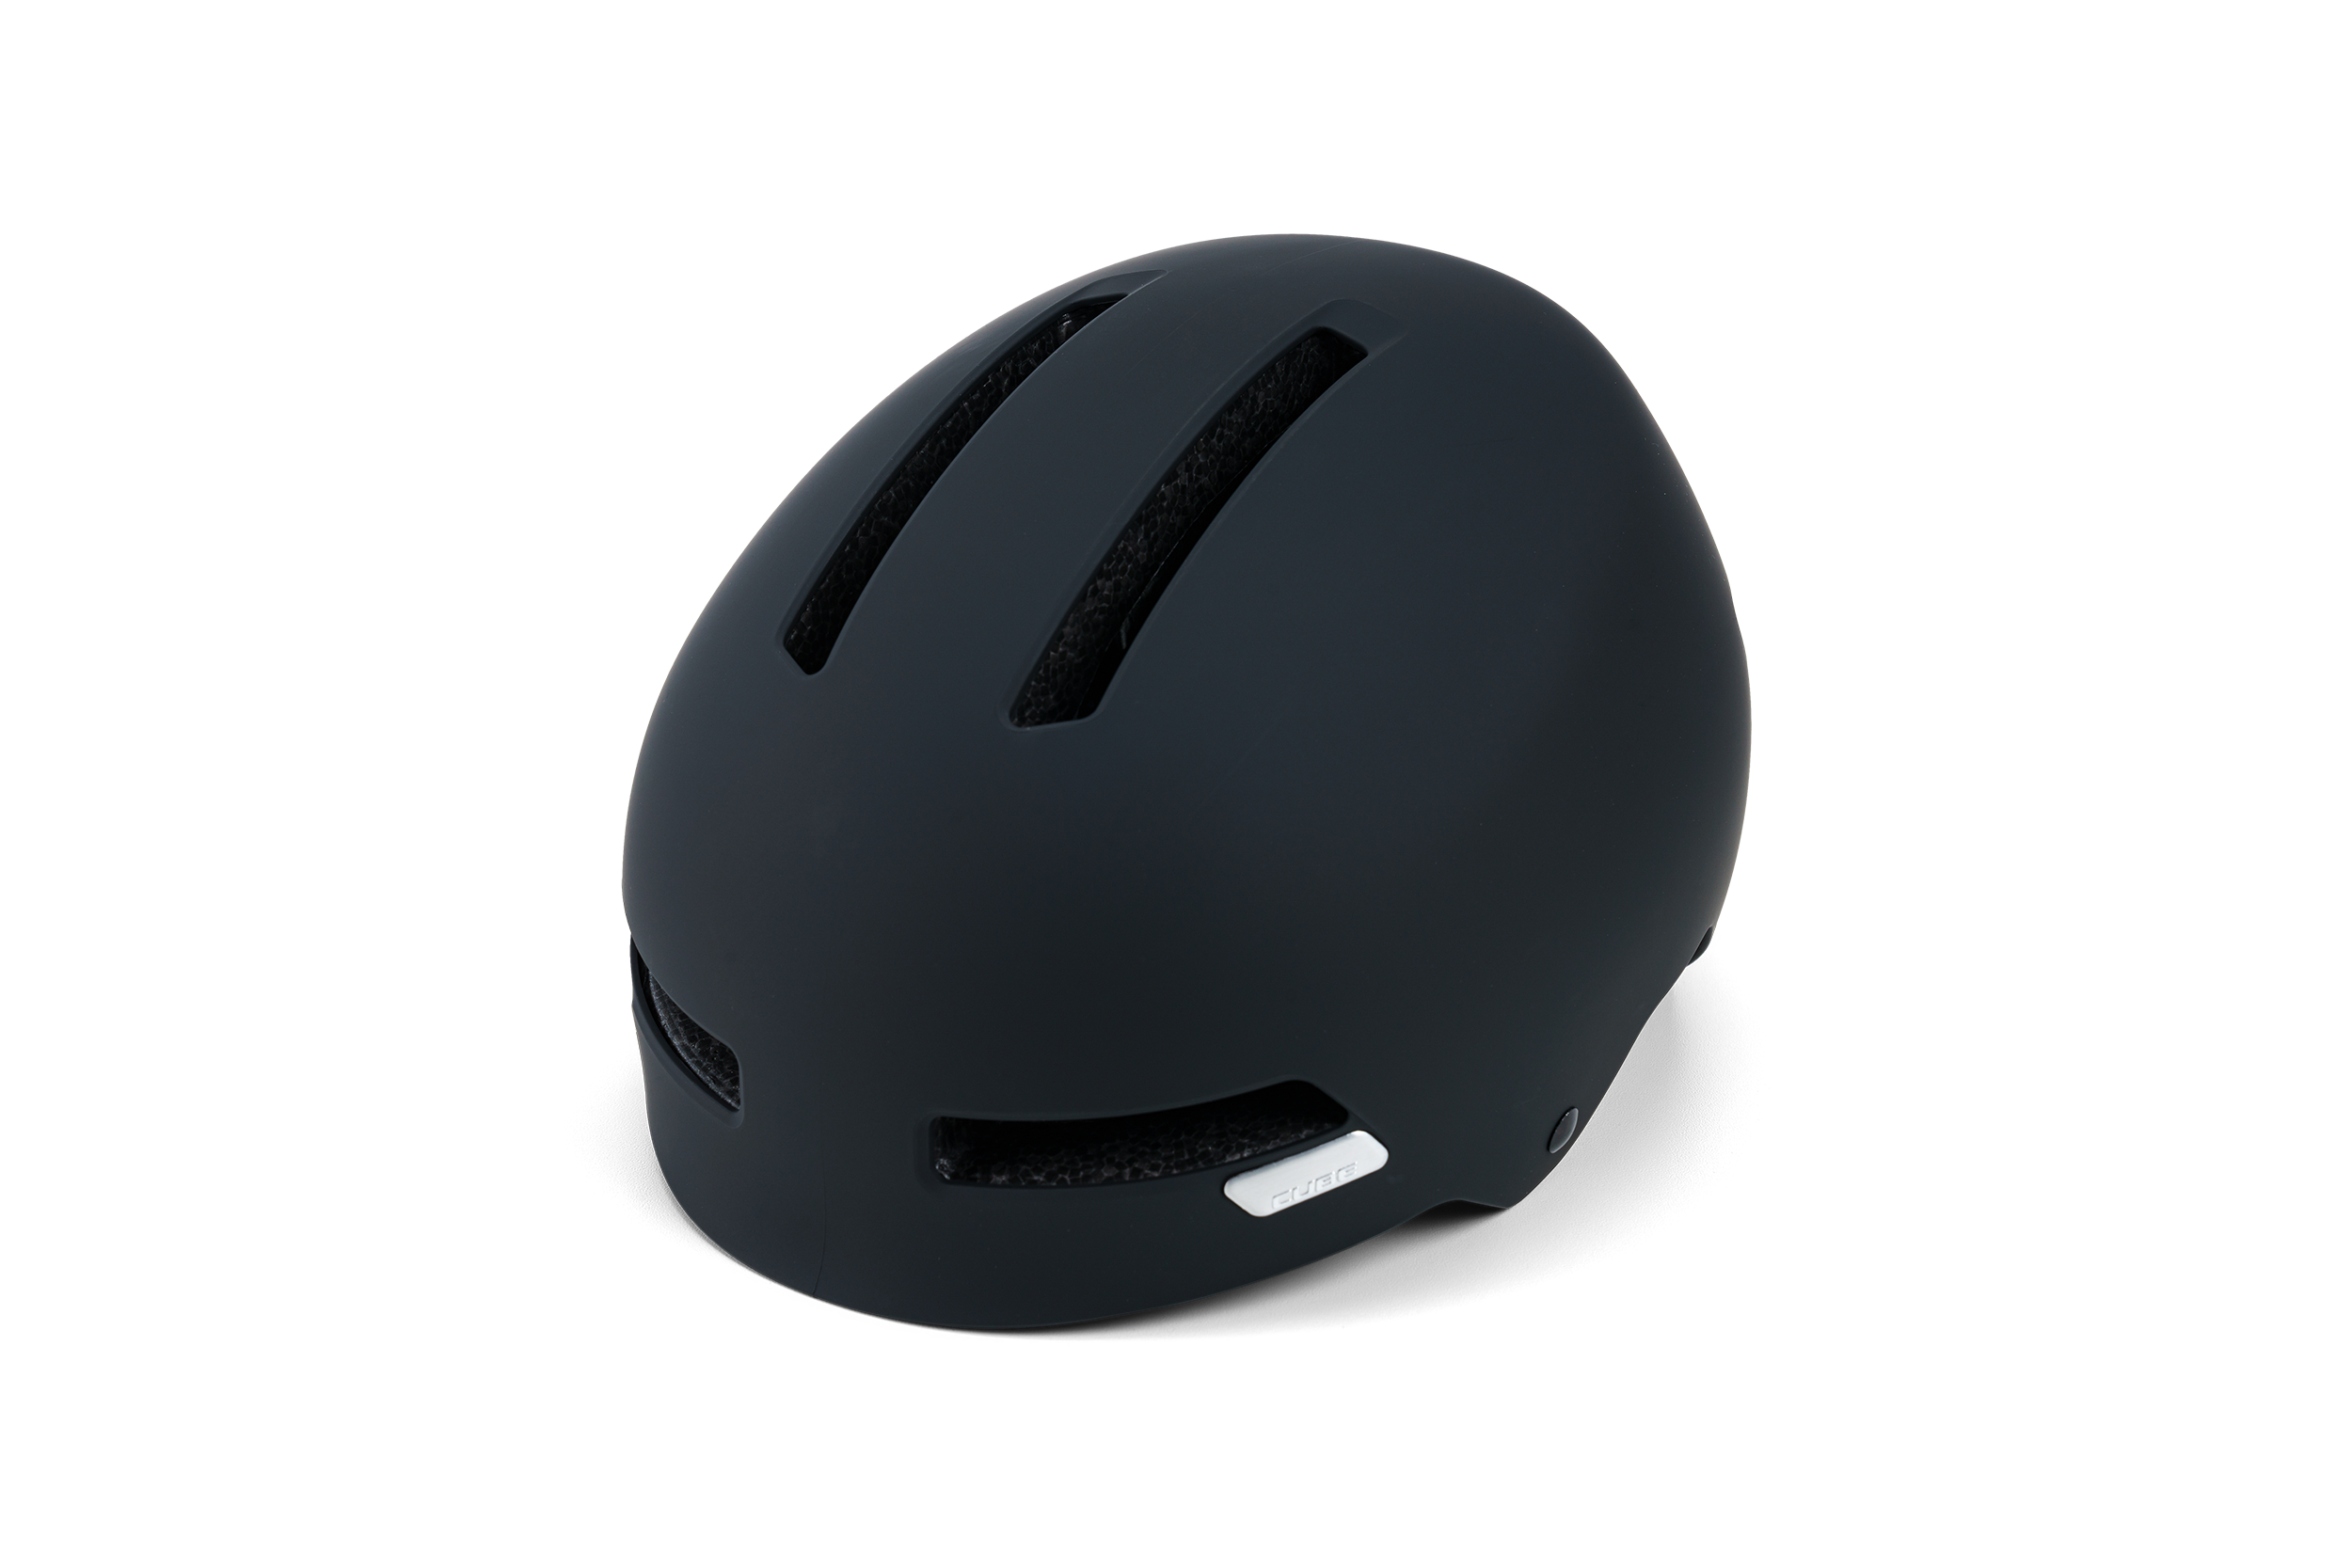 CUBE Helmet DIRT 2.0